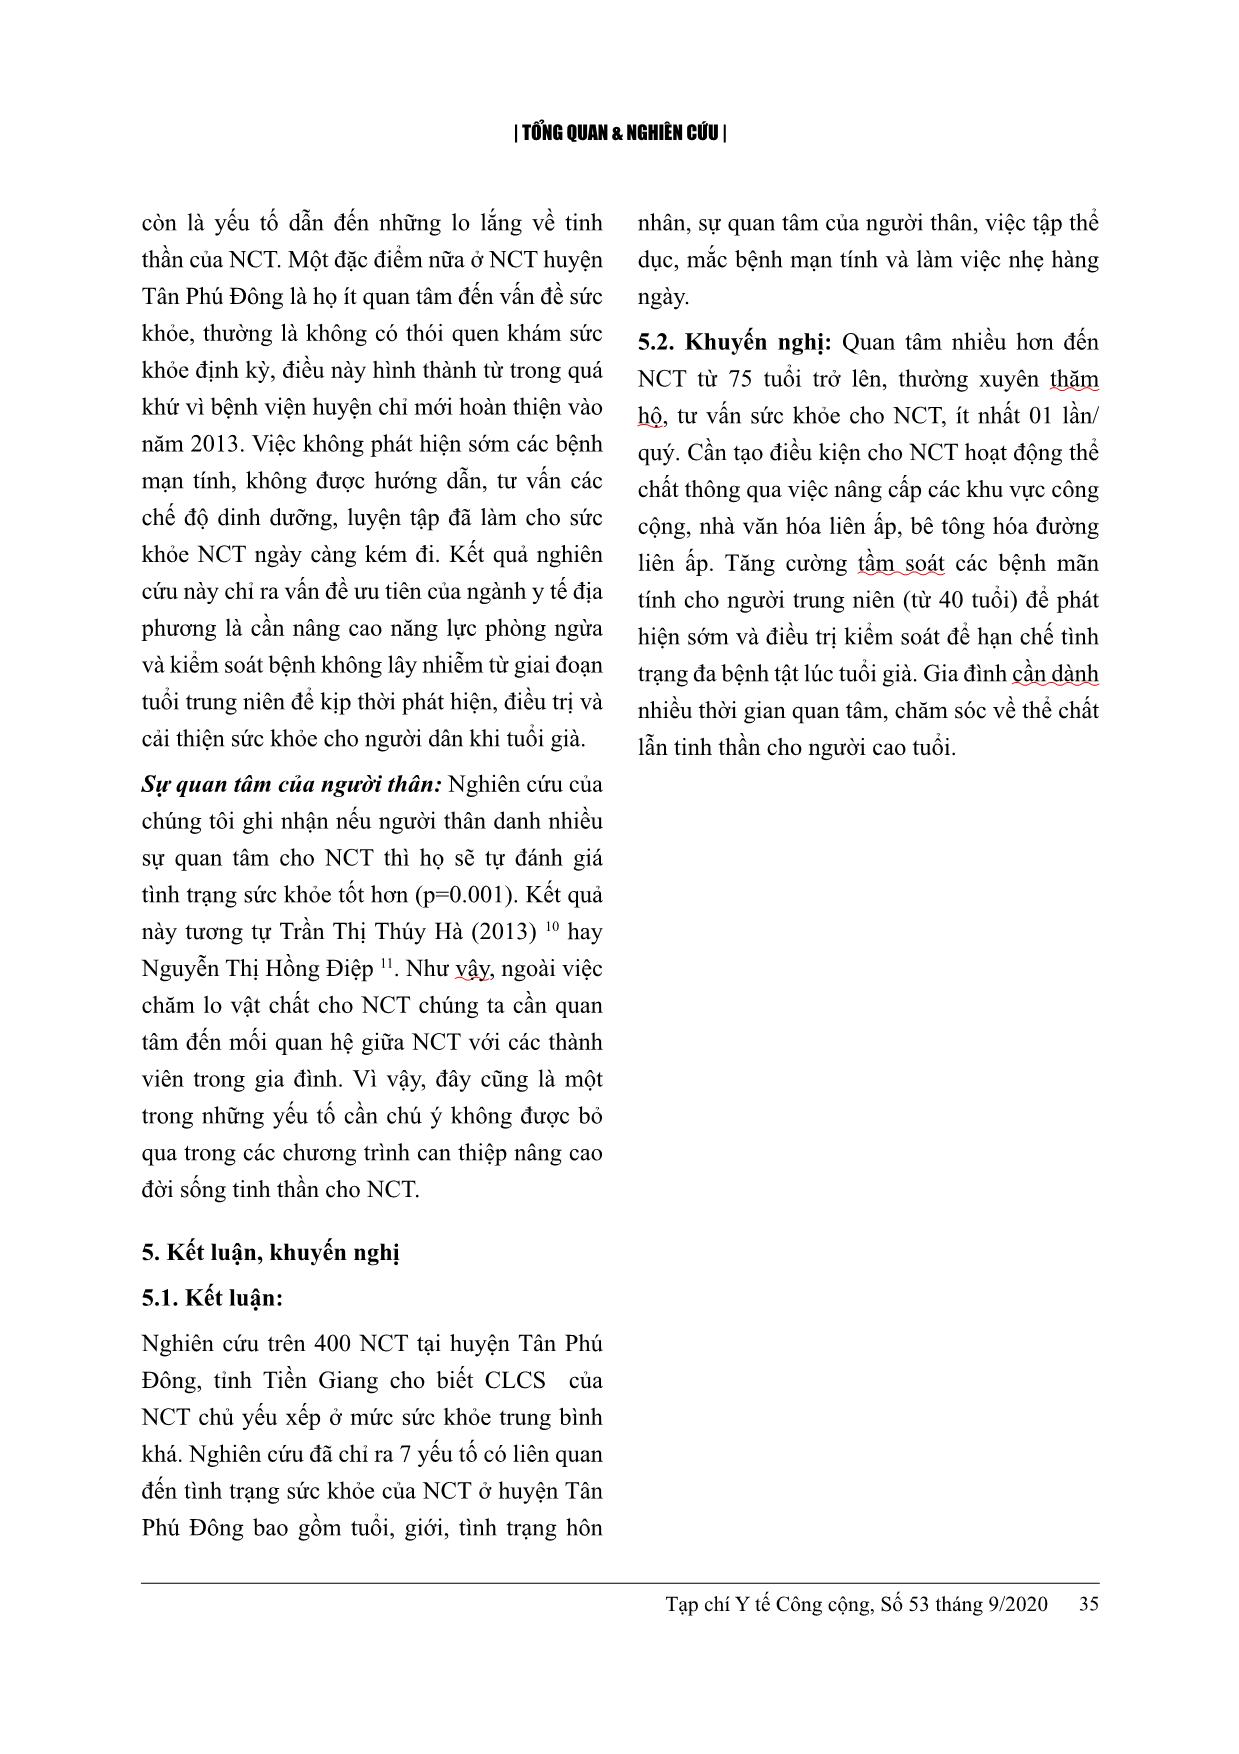 Chất lượng cuộc sống và một số yếu tố liên quan ở người cao tuổi tại huyện Tân Phú Đông, tỉnh Tiền Giang năm 2020 trang 10